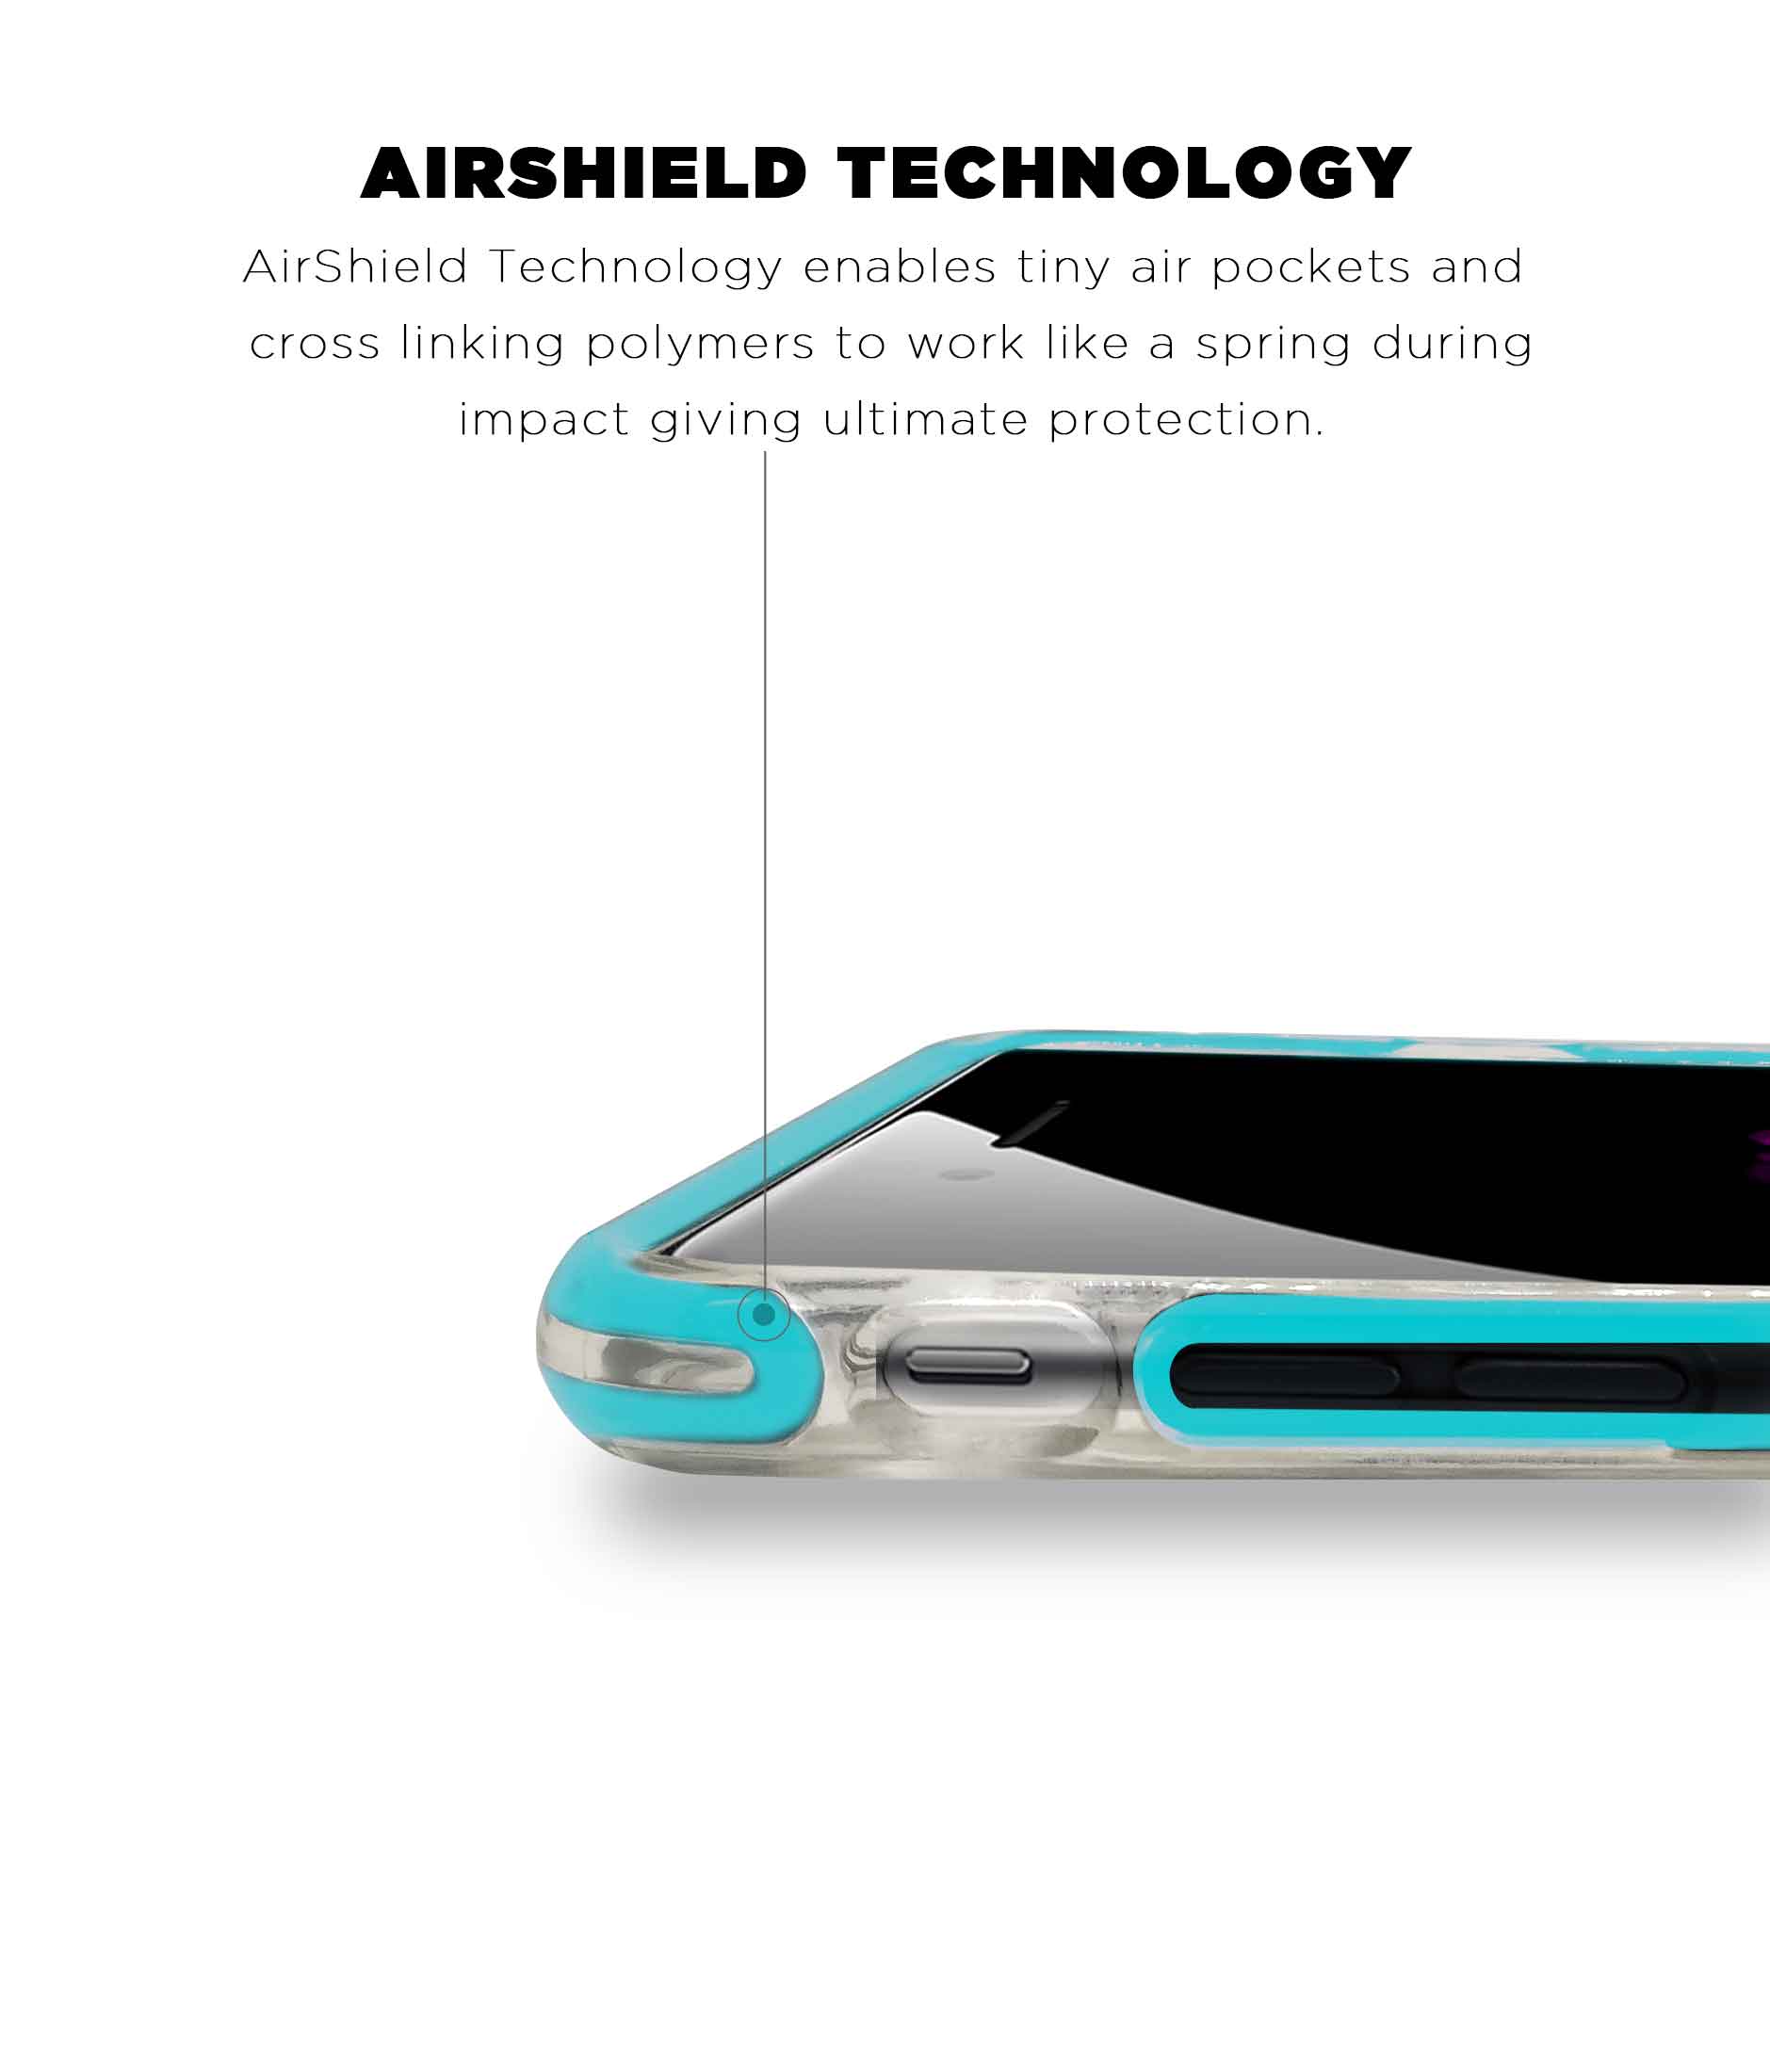 Illuminated Hulk - Extreme Phone Case for iPhone 6